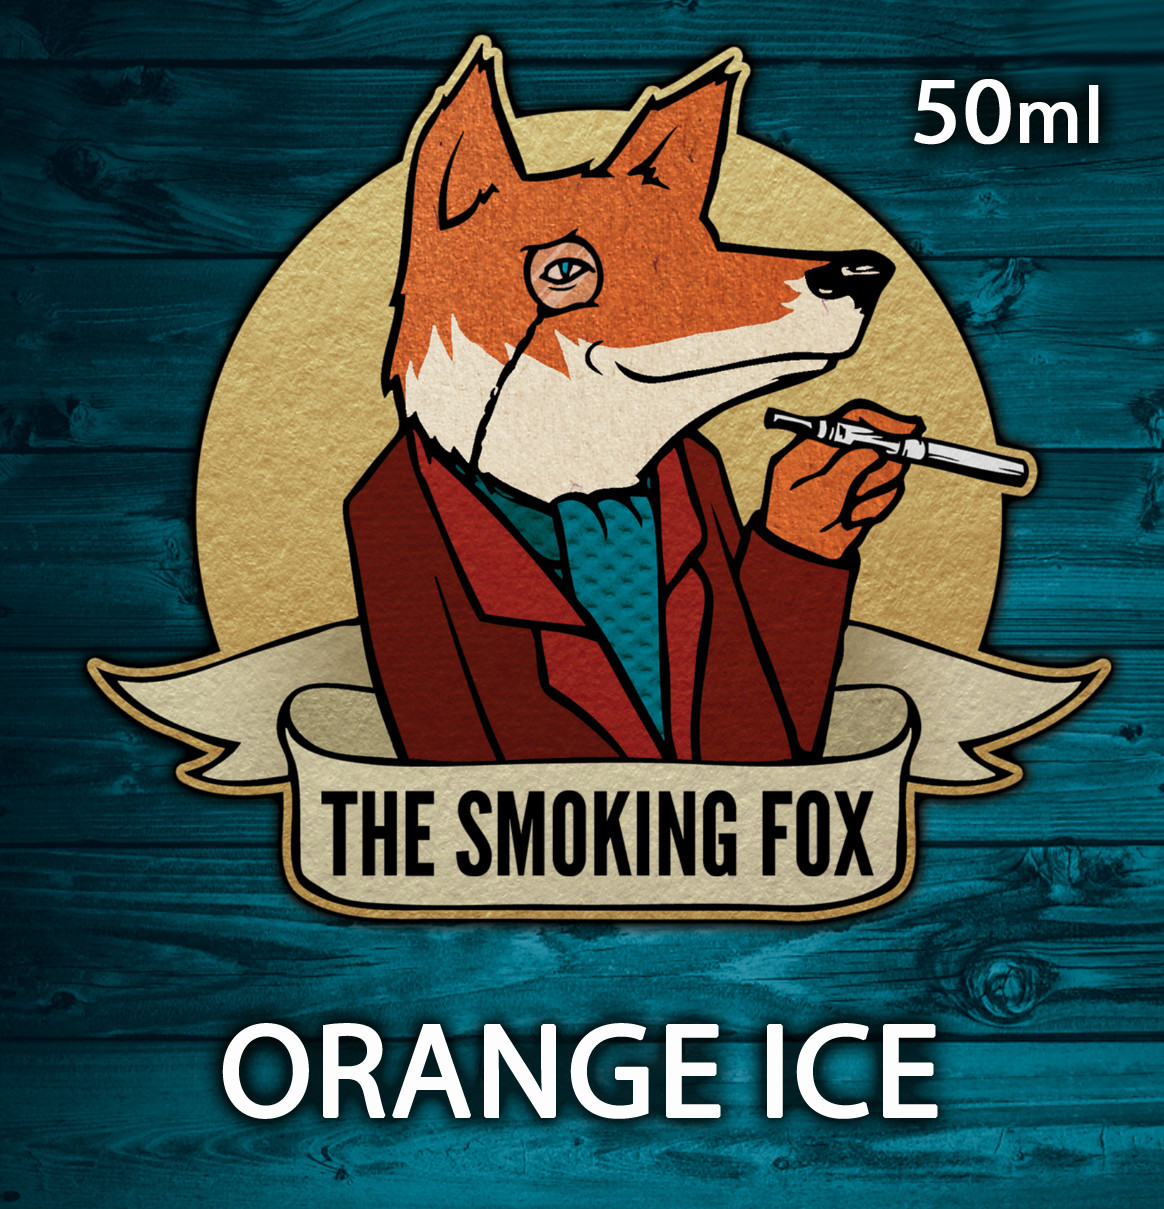 THE SMOKING FOX 50ml - ORANGE ICE